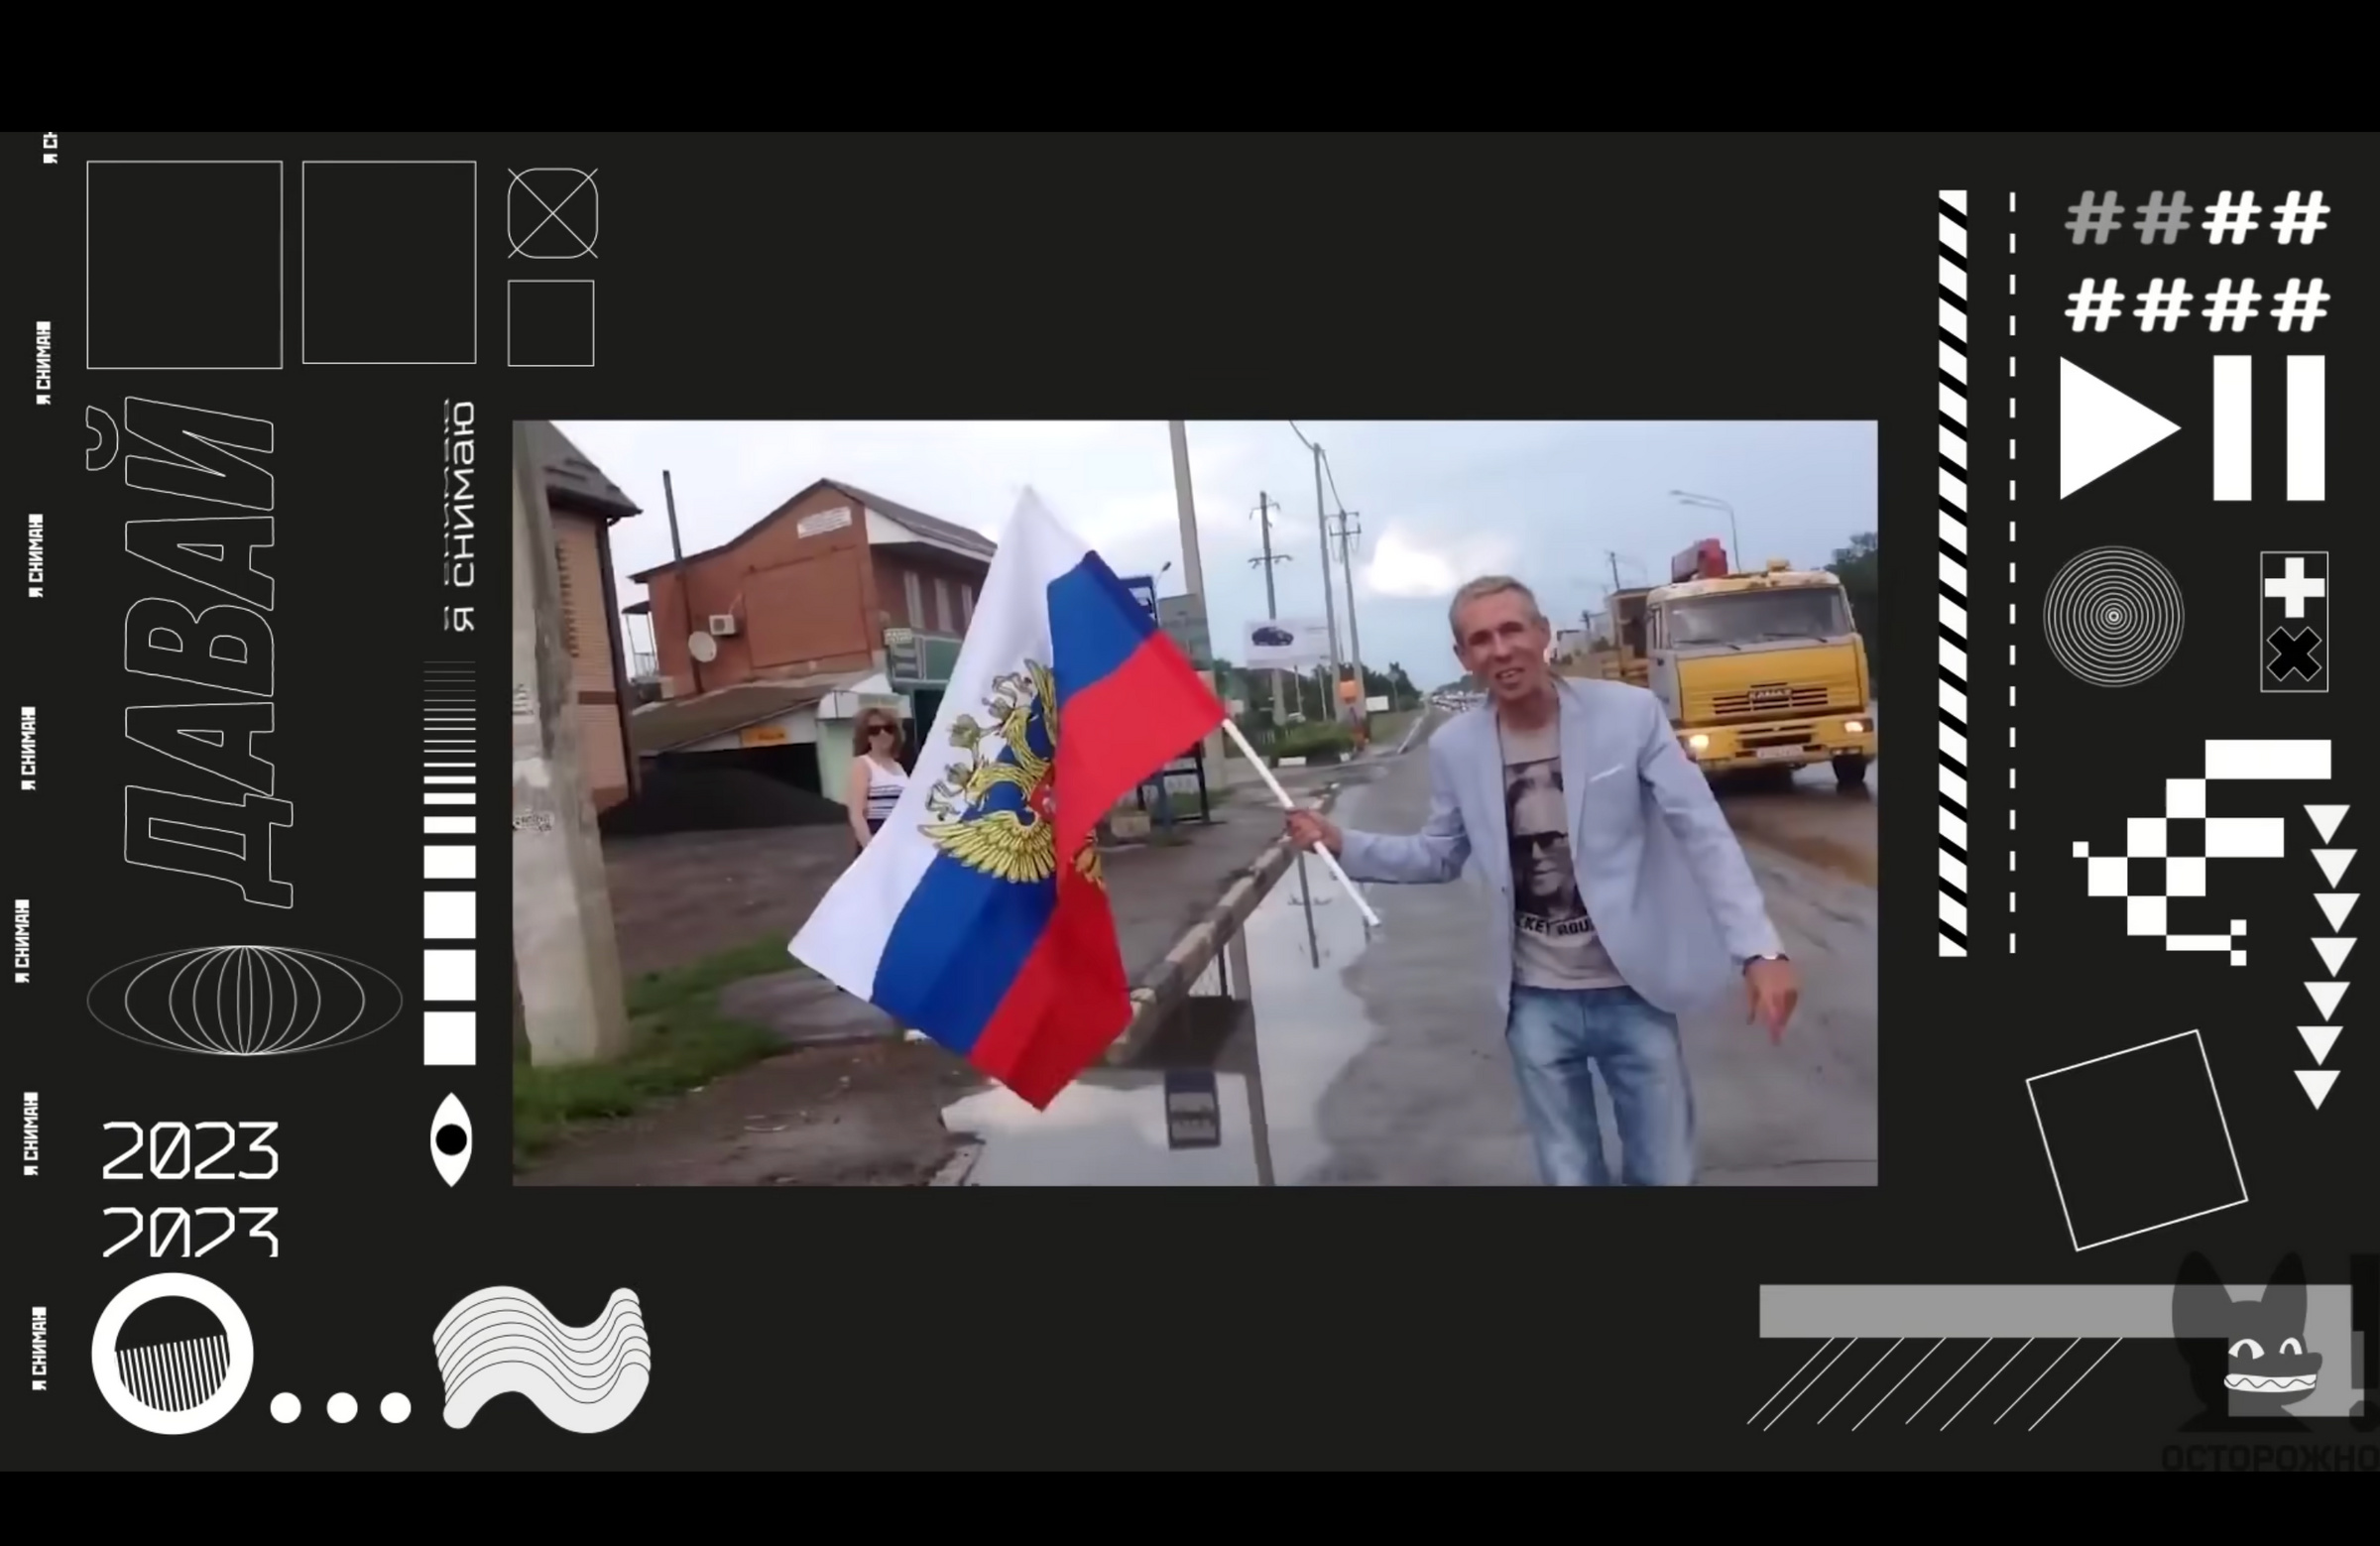 Панин* горячо приветствовал присоединение Крыма к России в 2014 году. Фото © YouTube / Осторожно: Собчак 